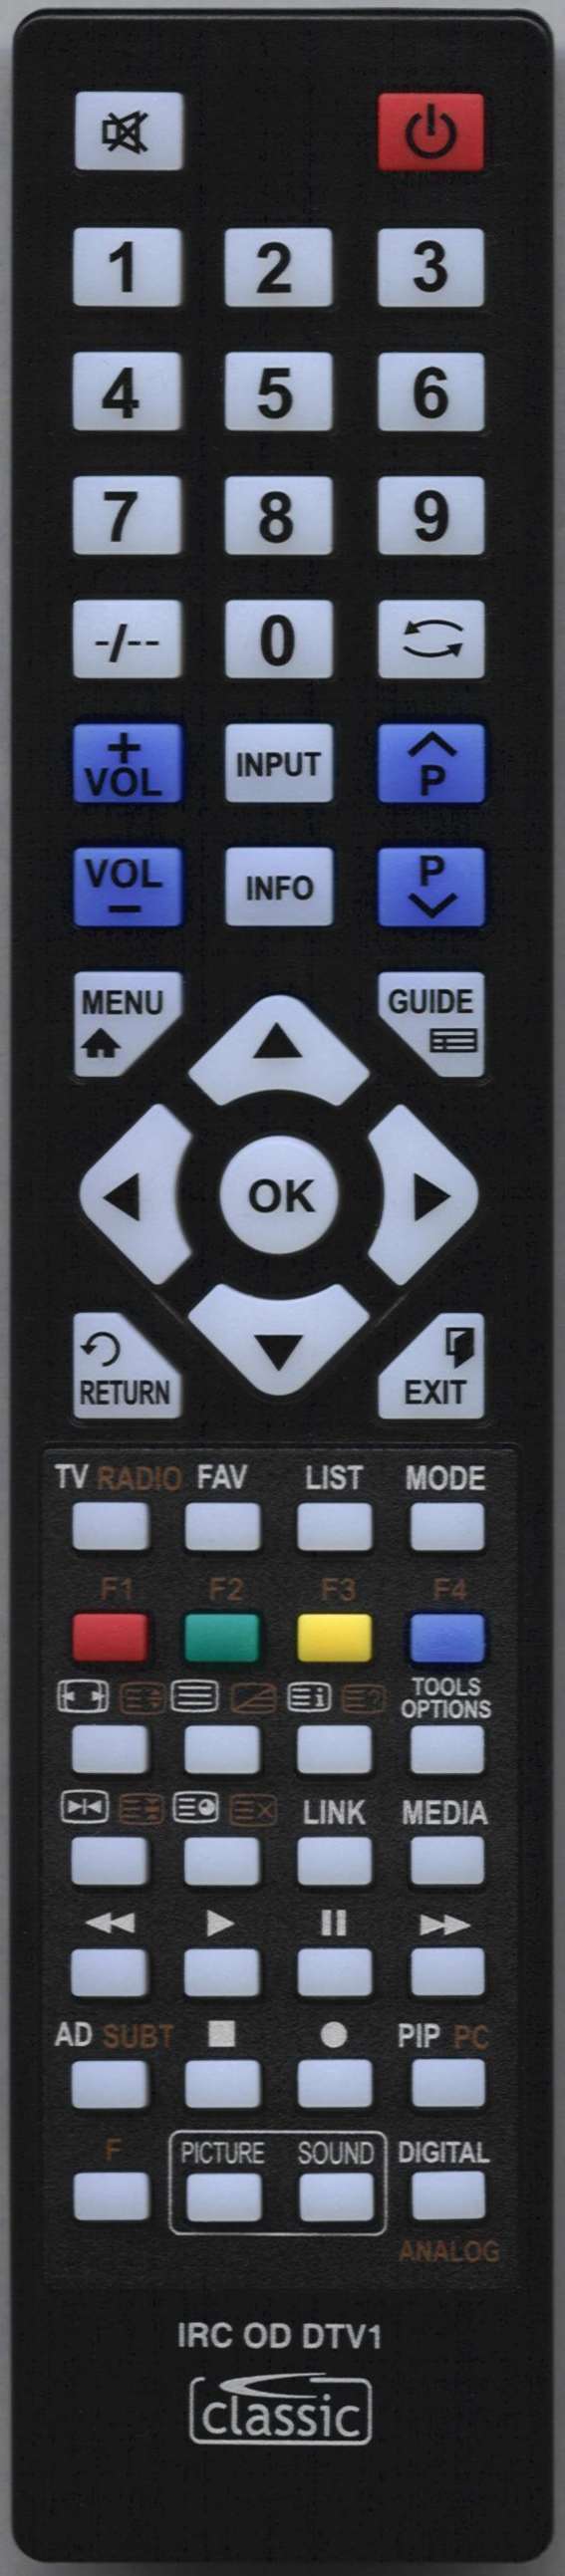 LUXOR 10047698 Remote Control Alternative